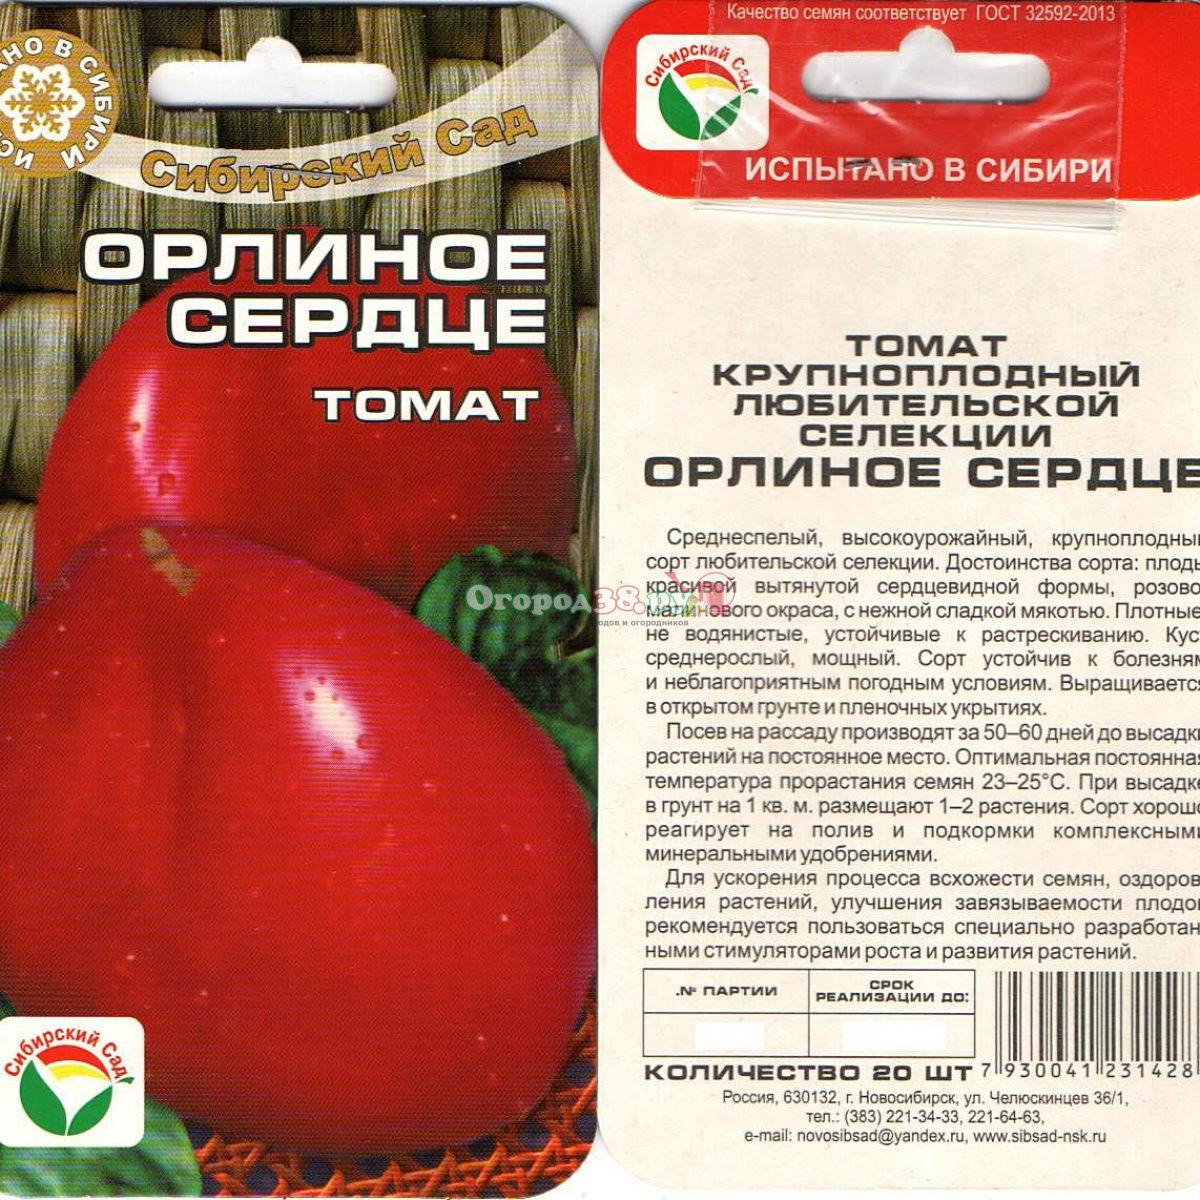 Томат "медовое сердце" f1: описание сорта, характеристики плодов-помидор, фото материалы и рекомендации по выращиванию русский фермер